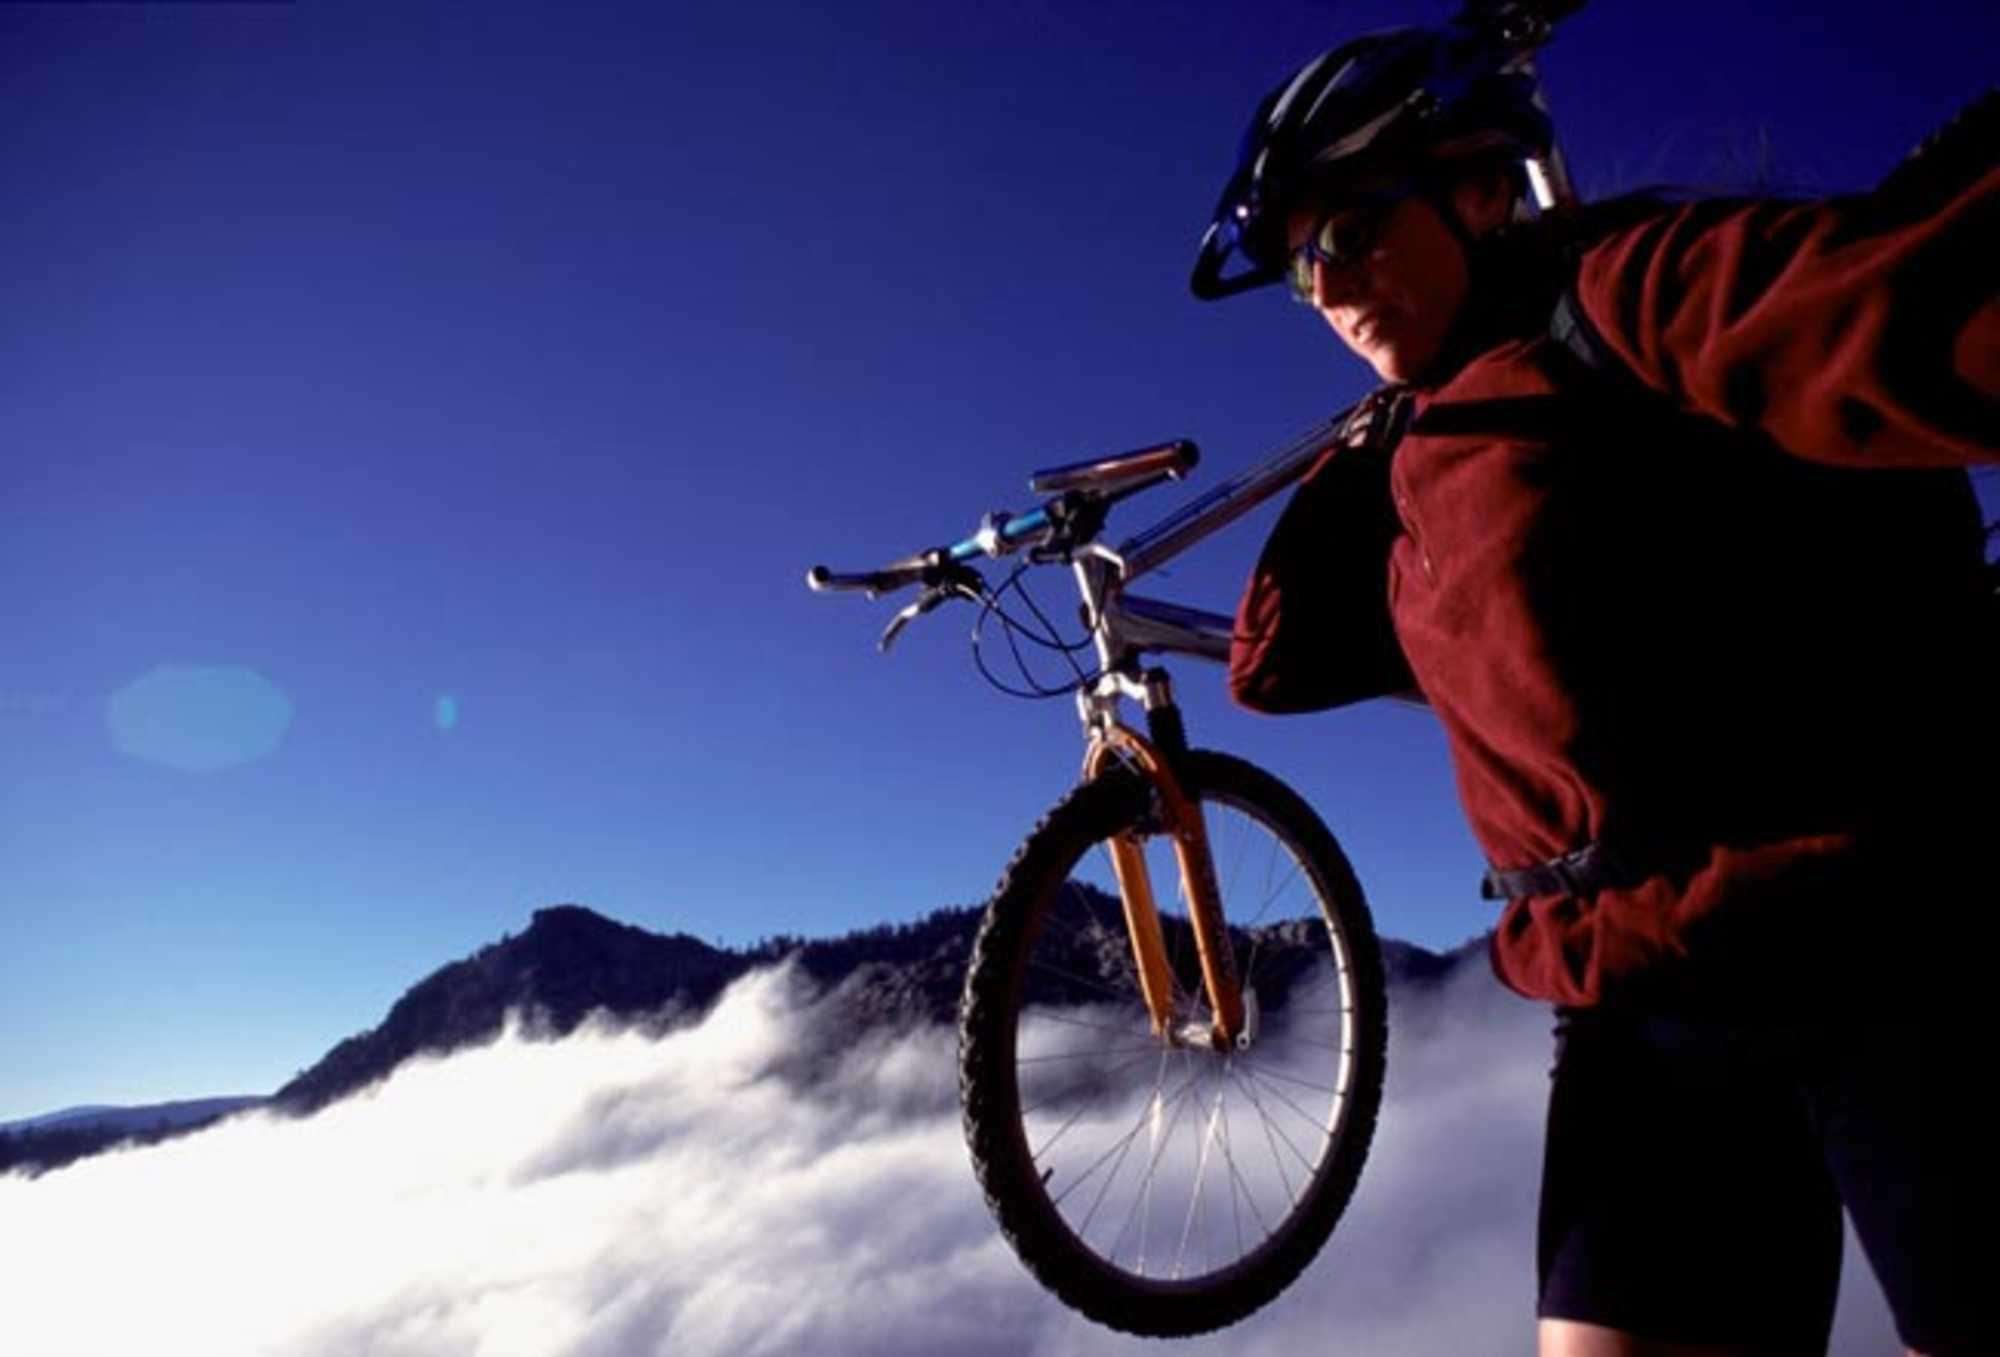 Aventura Descenso Bicicleta de montaña | Pegatina